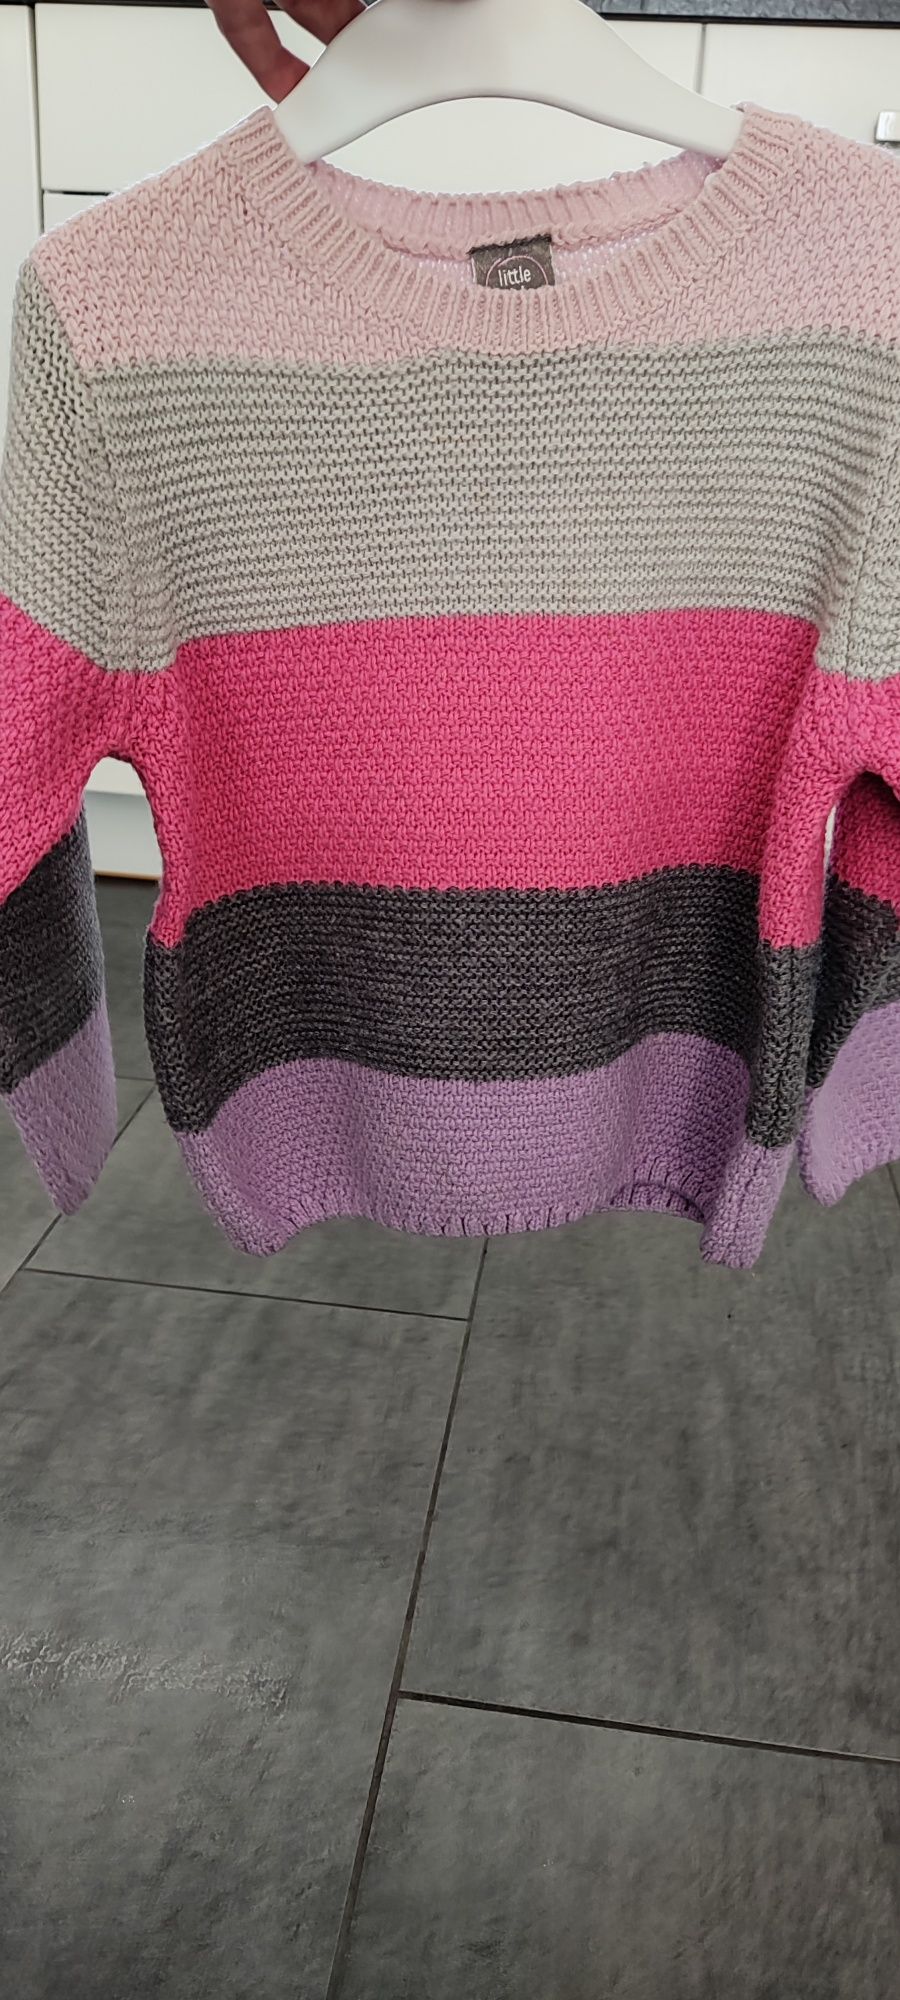 Kolorowy sweterek dla dziewczynki, rozmiar 104.